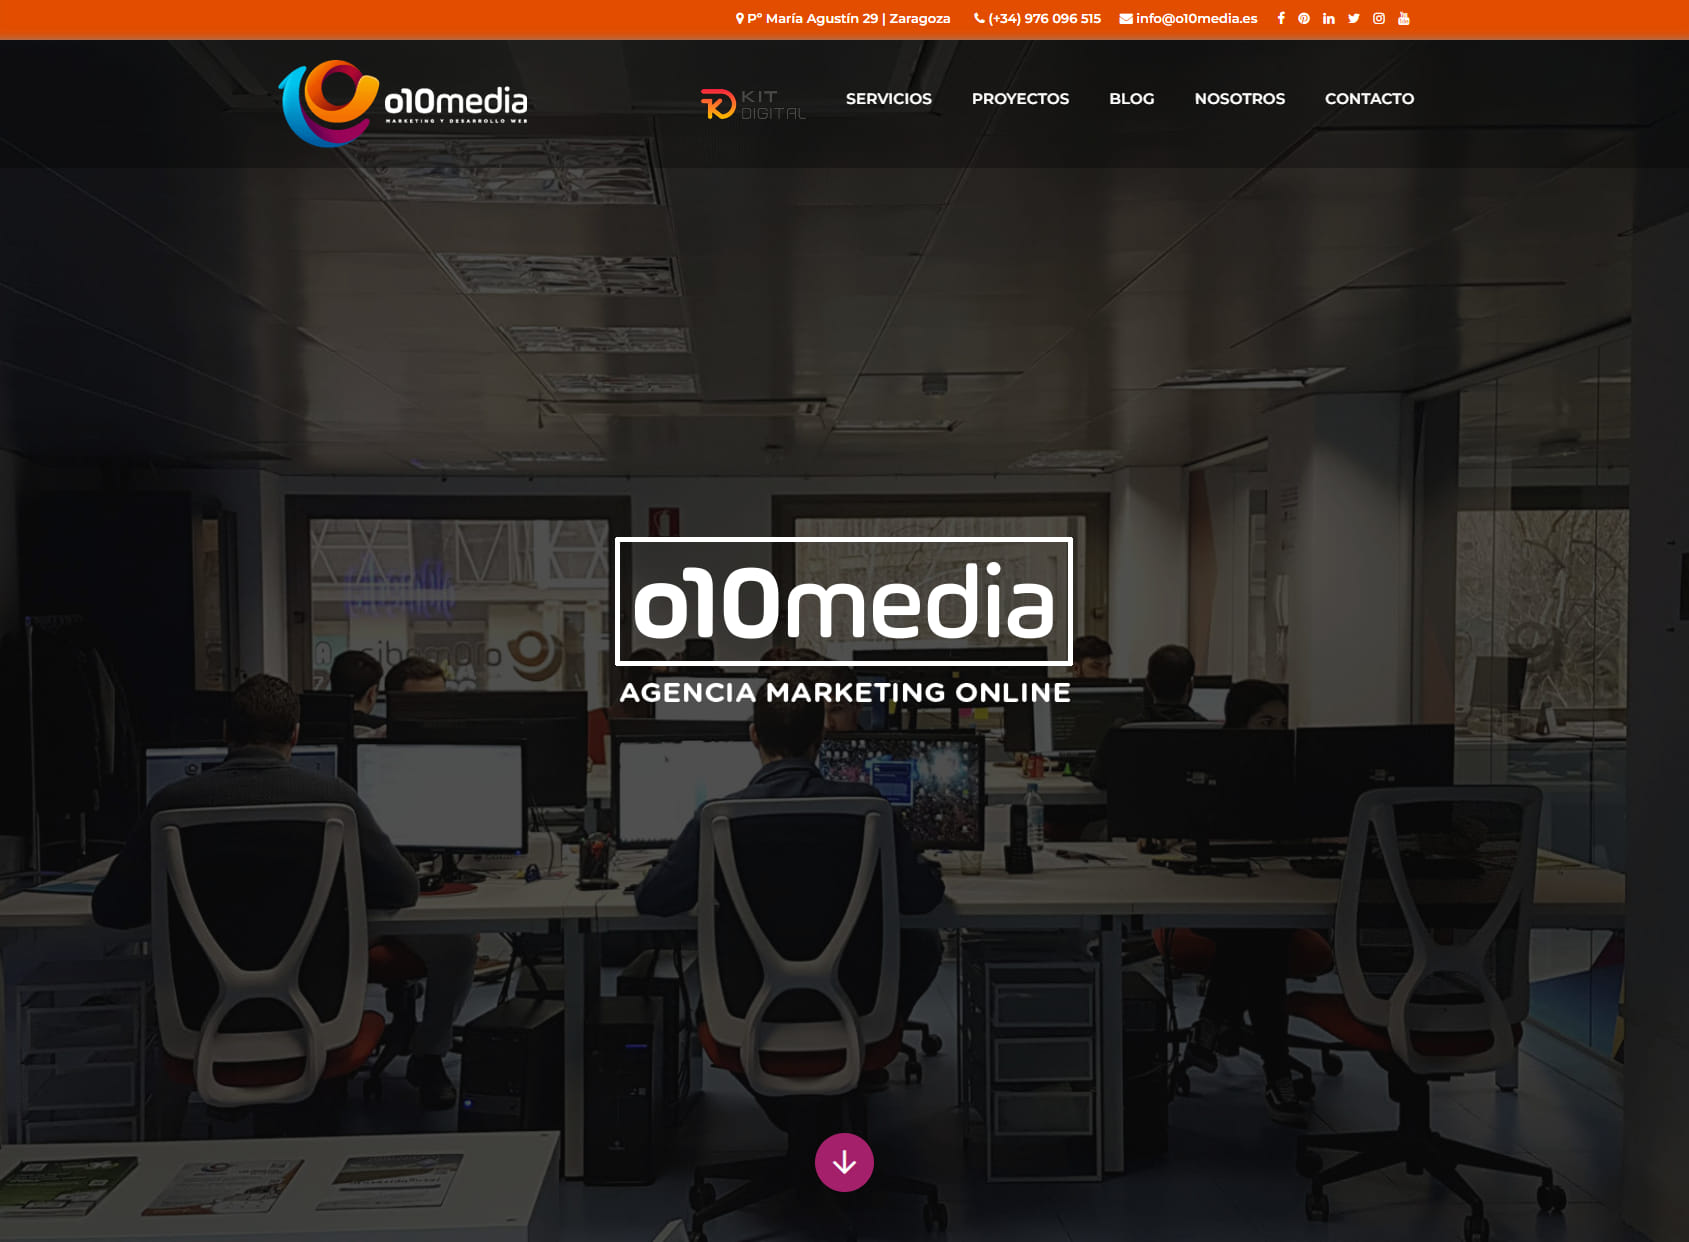 o10media | Agencia de Marketing Online, Diseño y posicionamiento web.